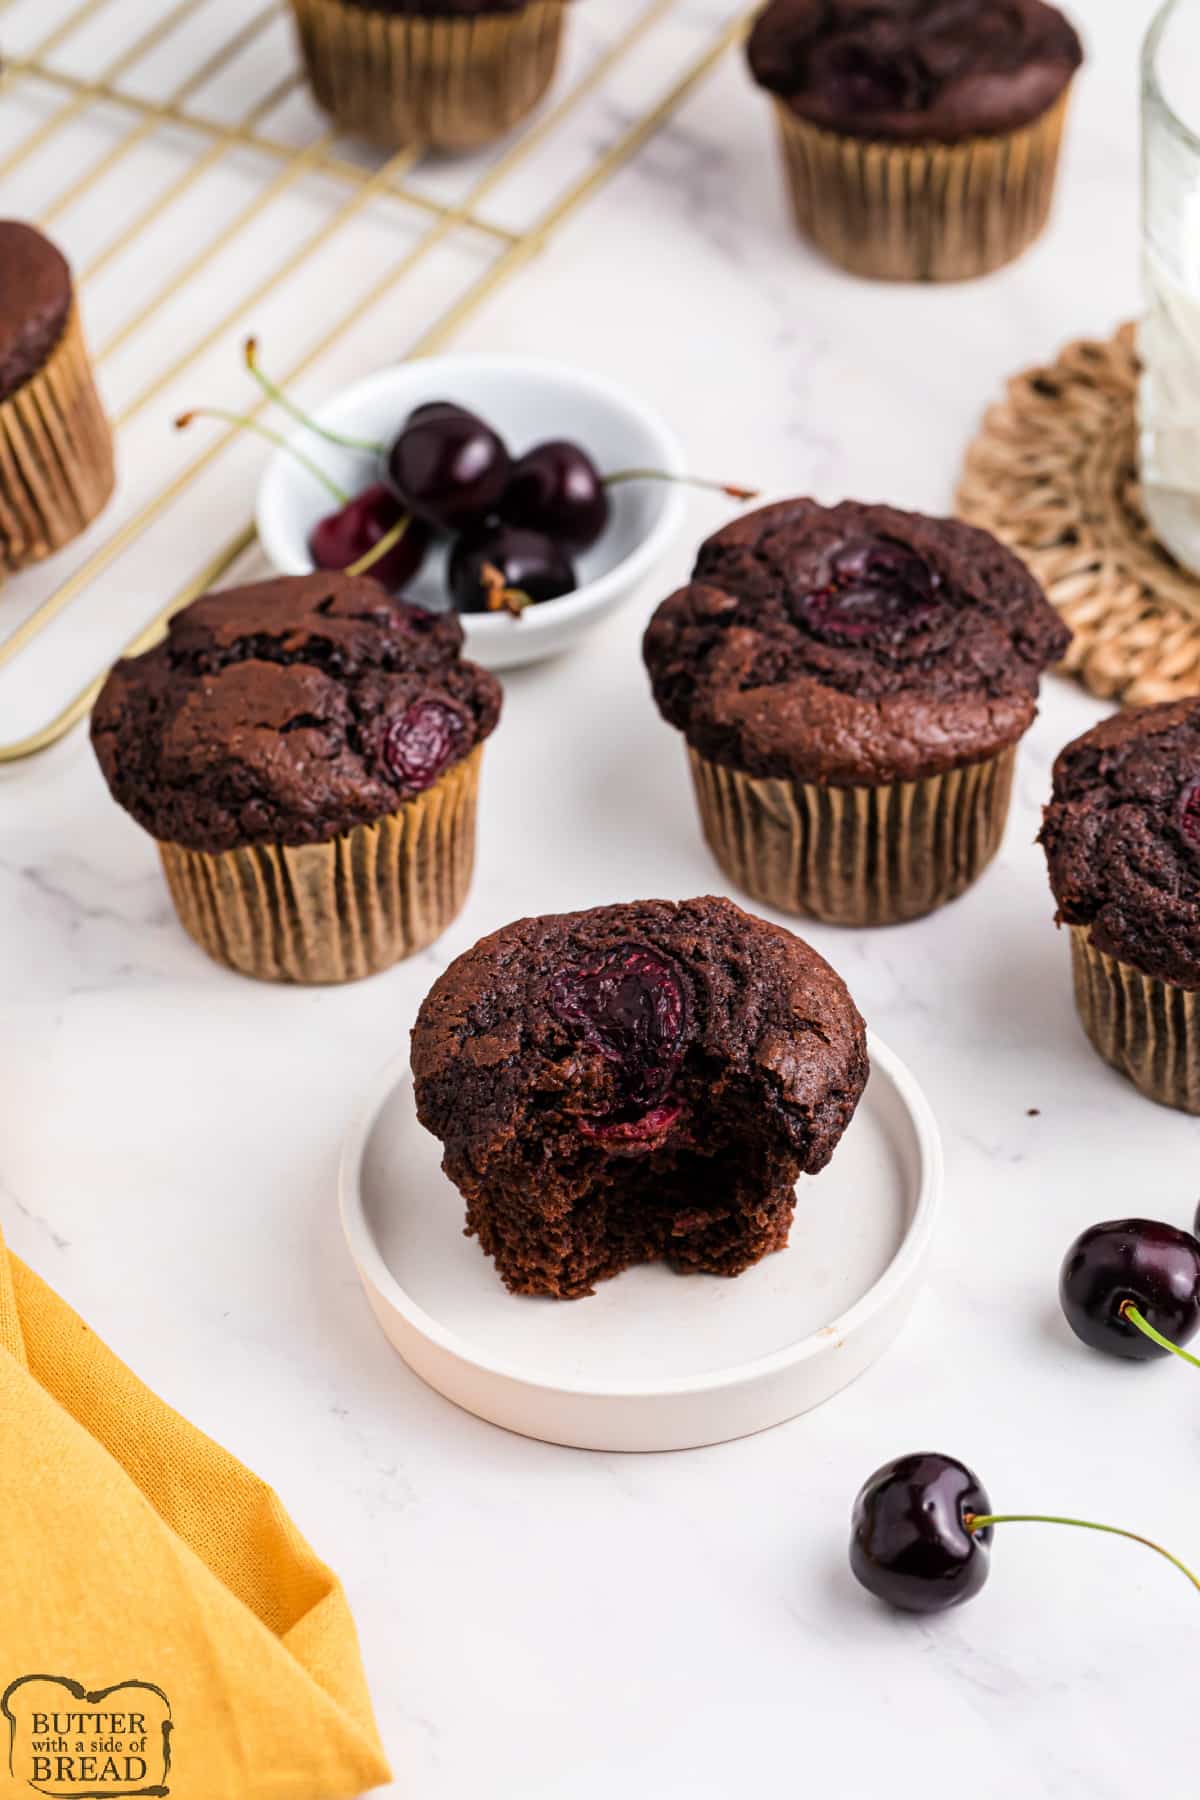 Chocolate muffin recipe with cherries.